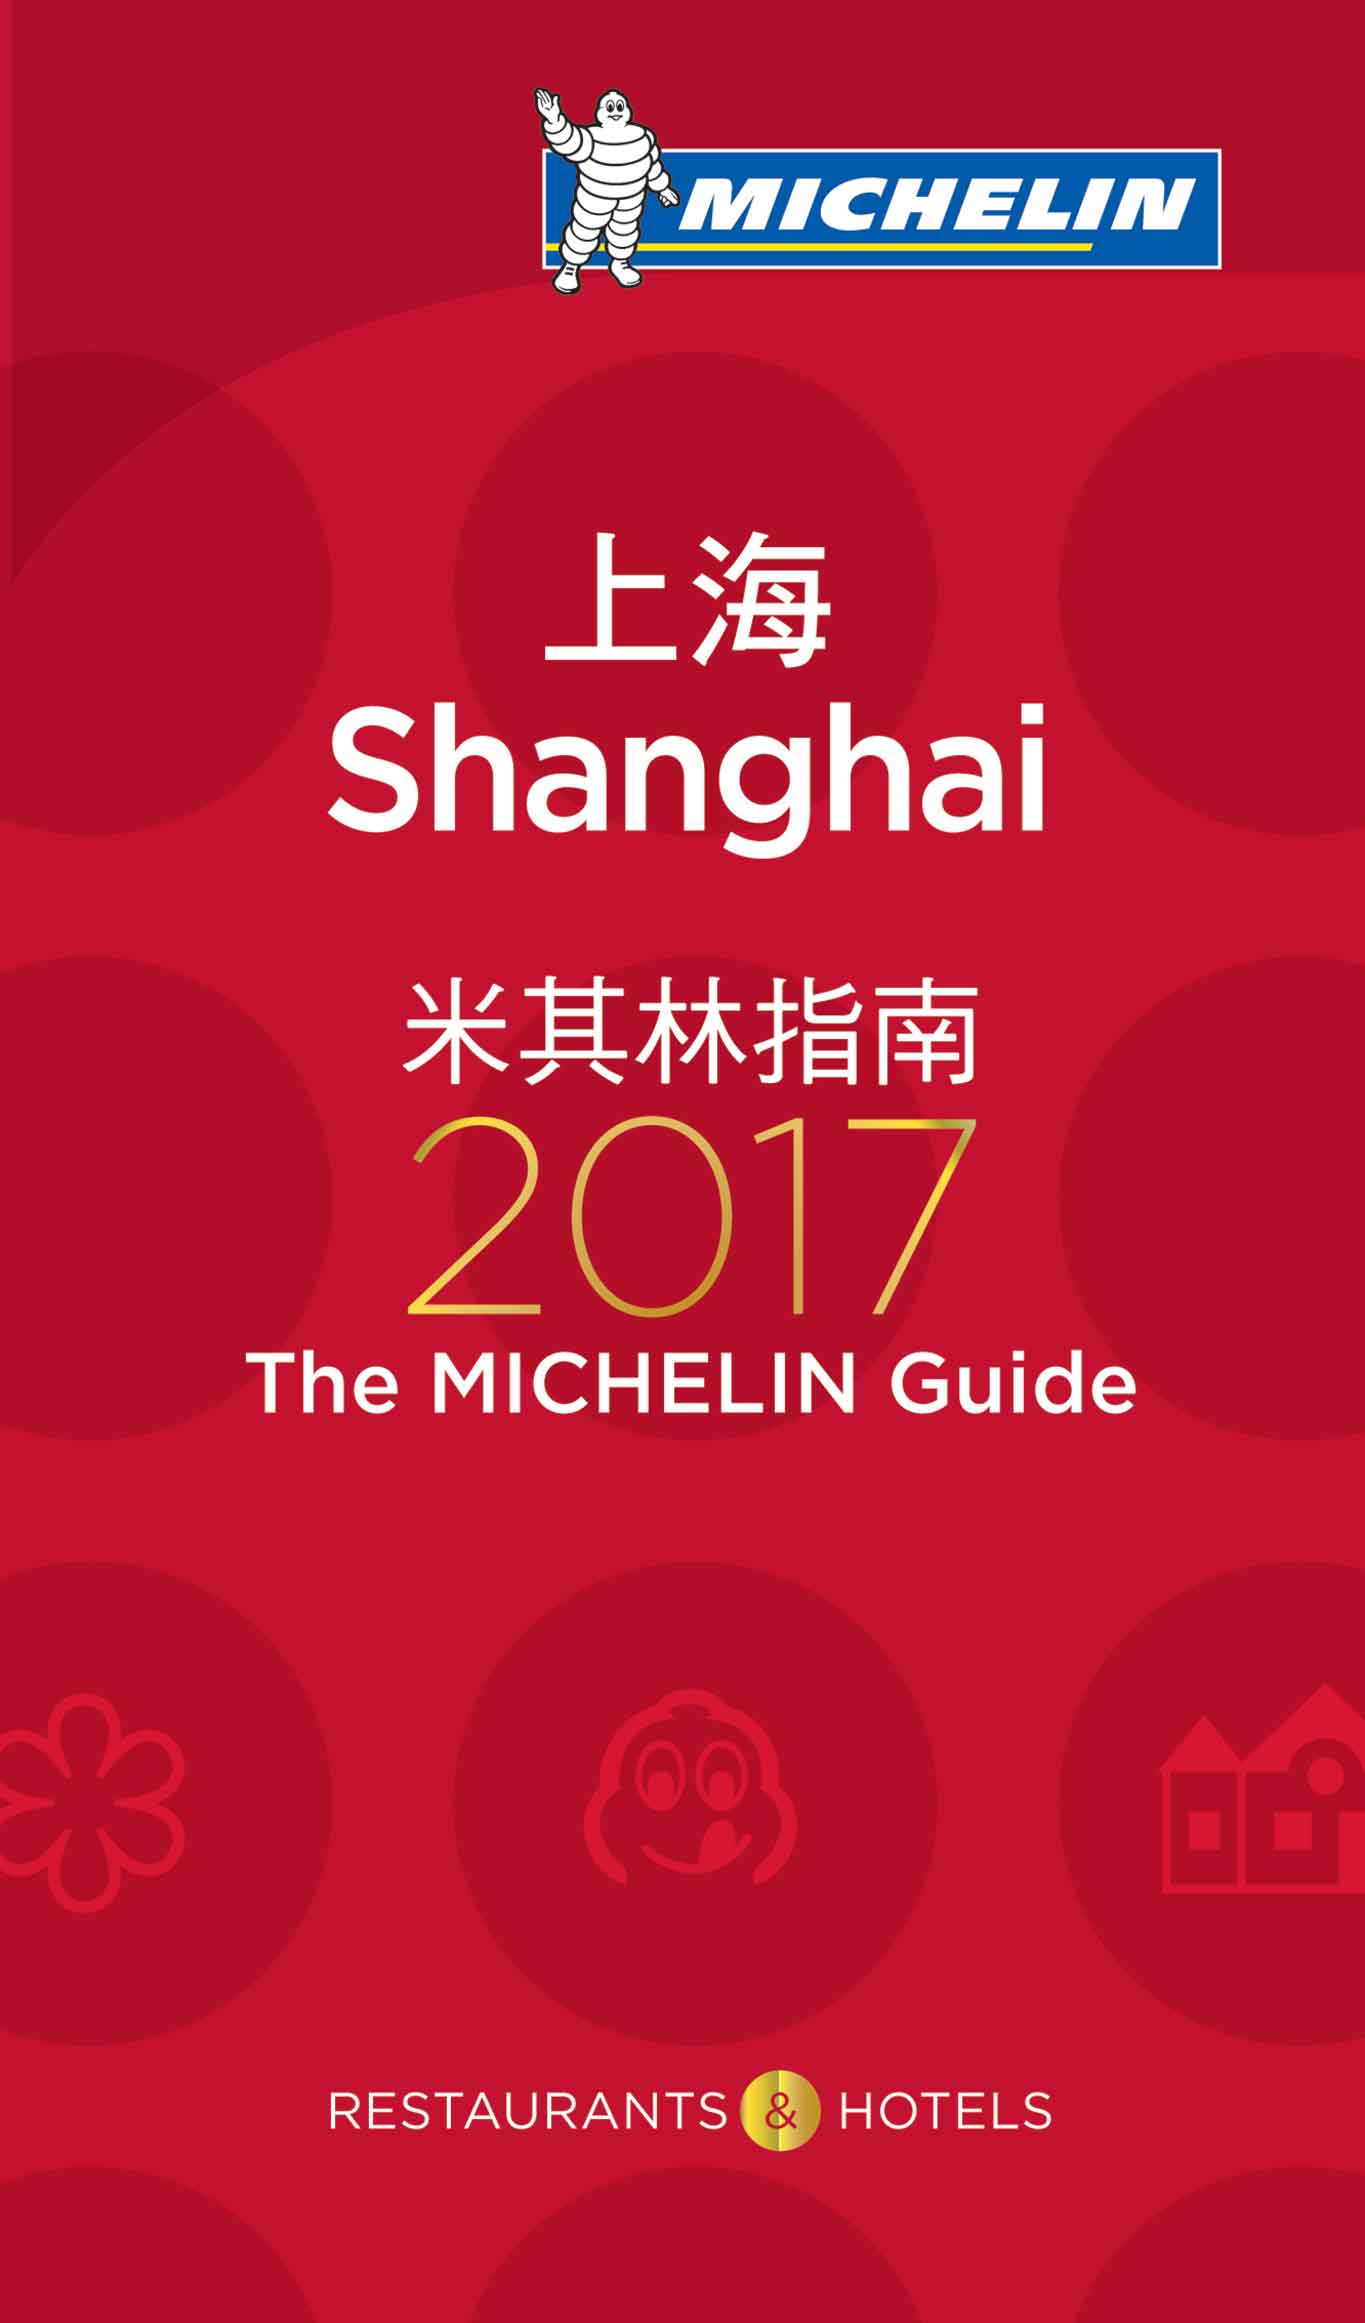 Risultati immagini per guida michelin shanghai 2017